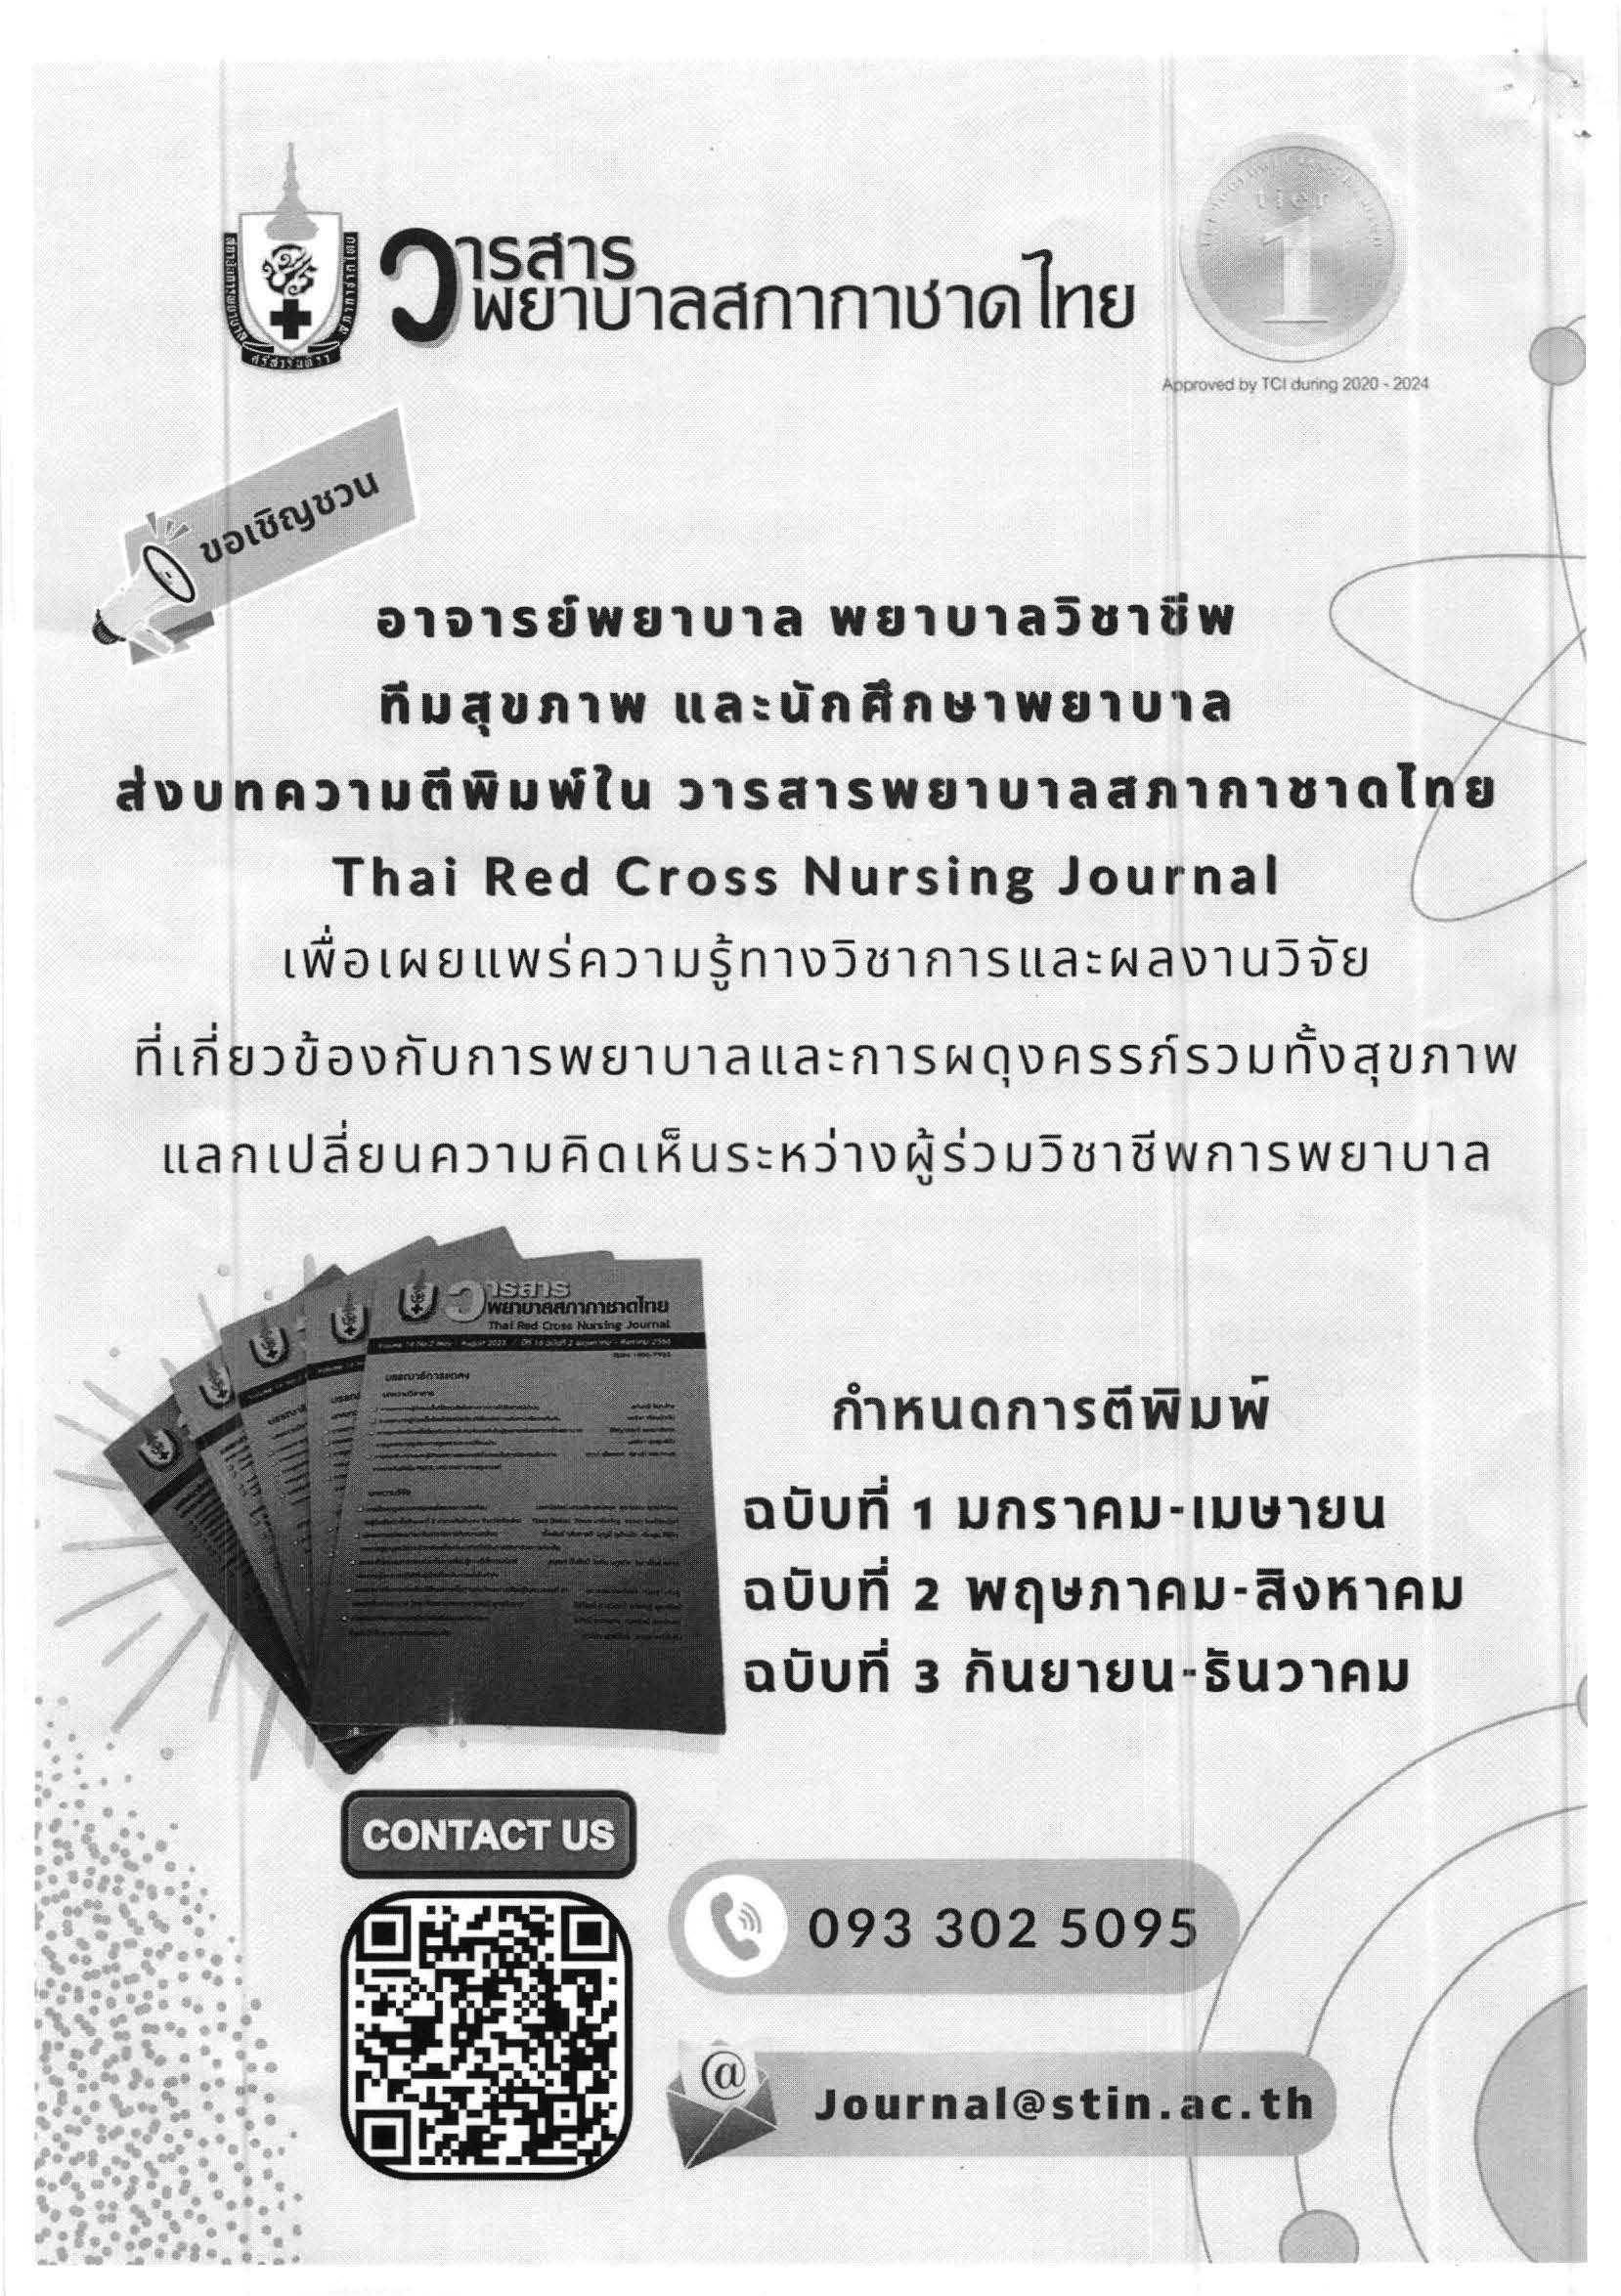 ประชาสัมพันธ์เชิญชวนส่งบทความวิชาการหรือบทความวิจัย เพื่อรับการพิจารณาตีพิมพ์เผยแพร่ในวารสารพยาบาลสภากาชาดไทย